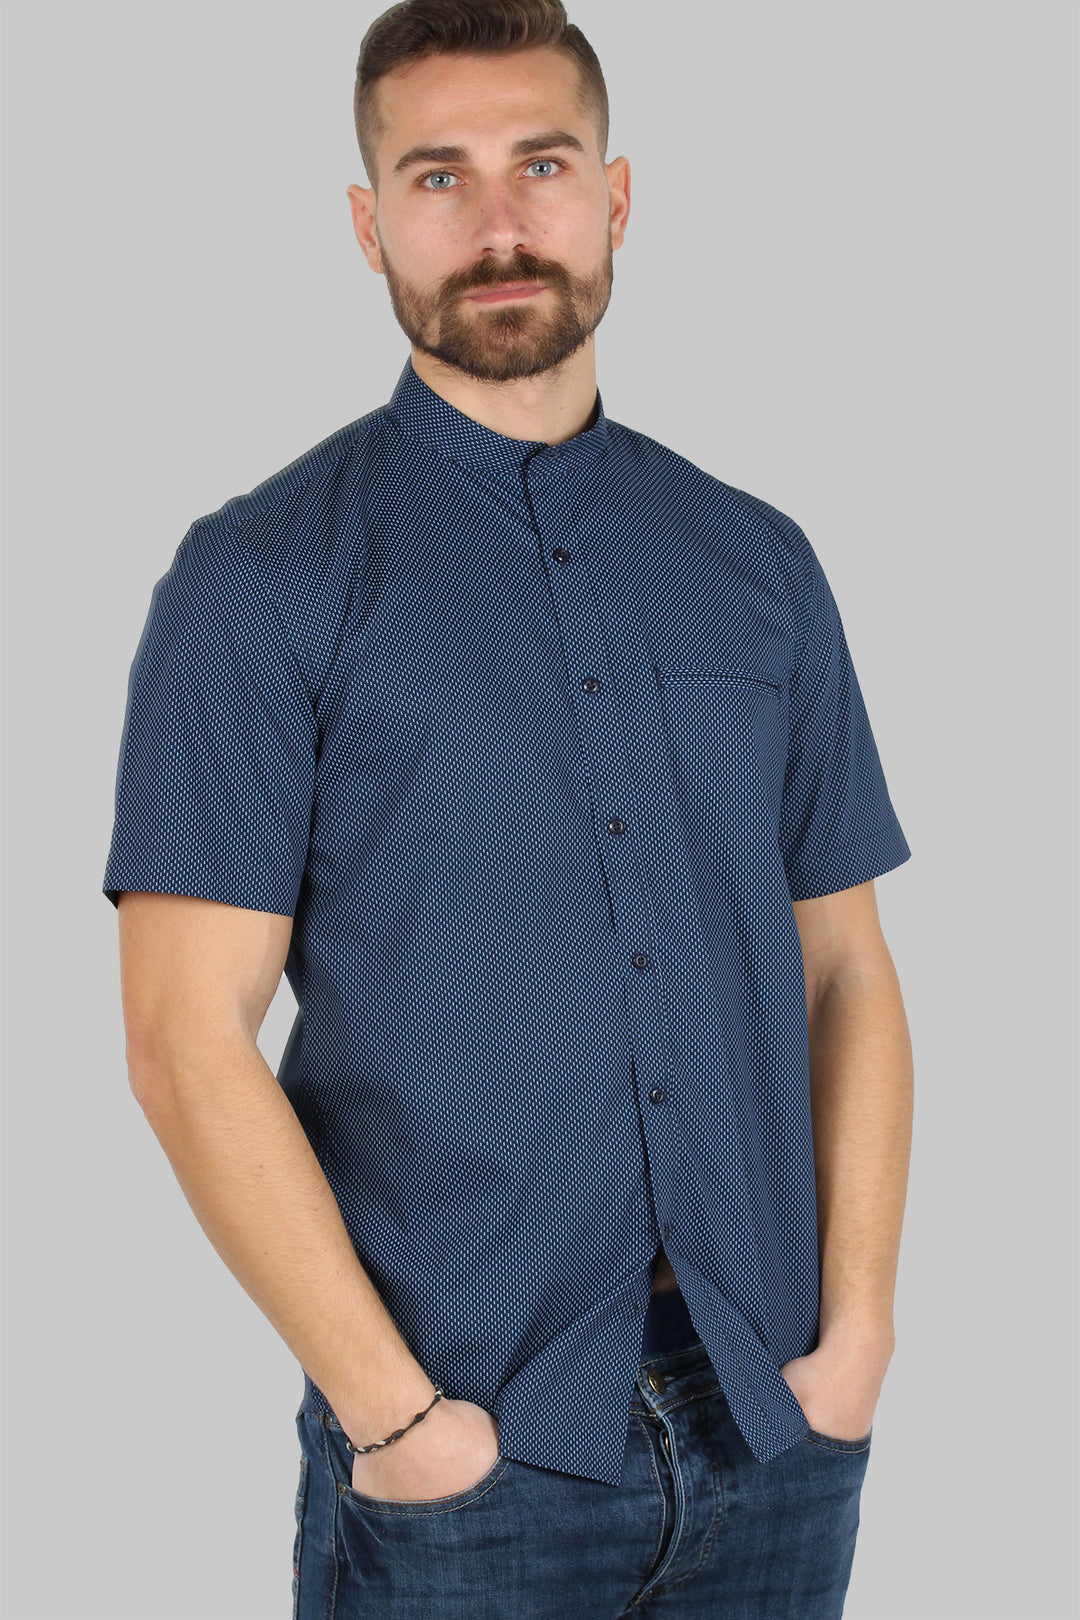 Camicia mezza manica uomo con microfantasia a contrasto